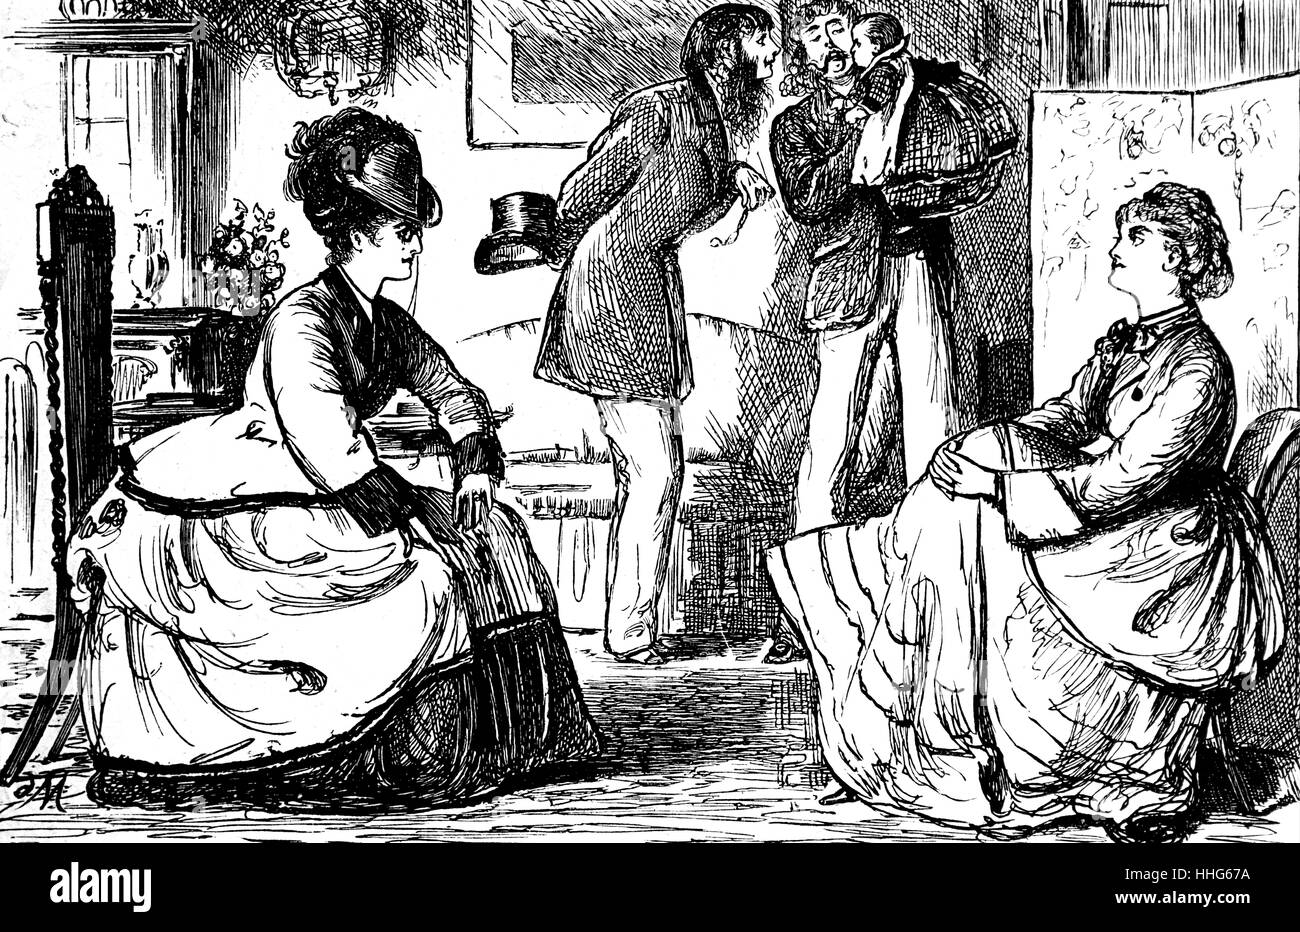 George Du Maurier caricatura de la revista "Punch", mostrando una reunión social de clase superior de parejas inglesas como el hablar de las mujeres y los hombres de cuidar a un bebé. 1871 Foto de stock